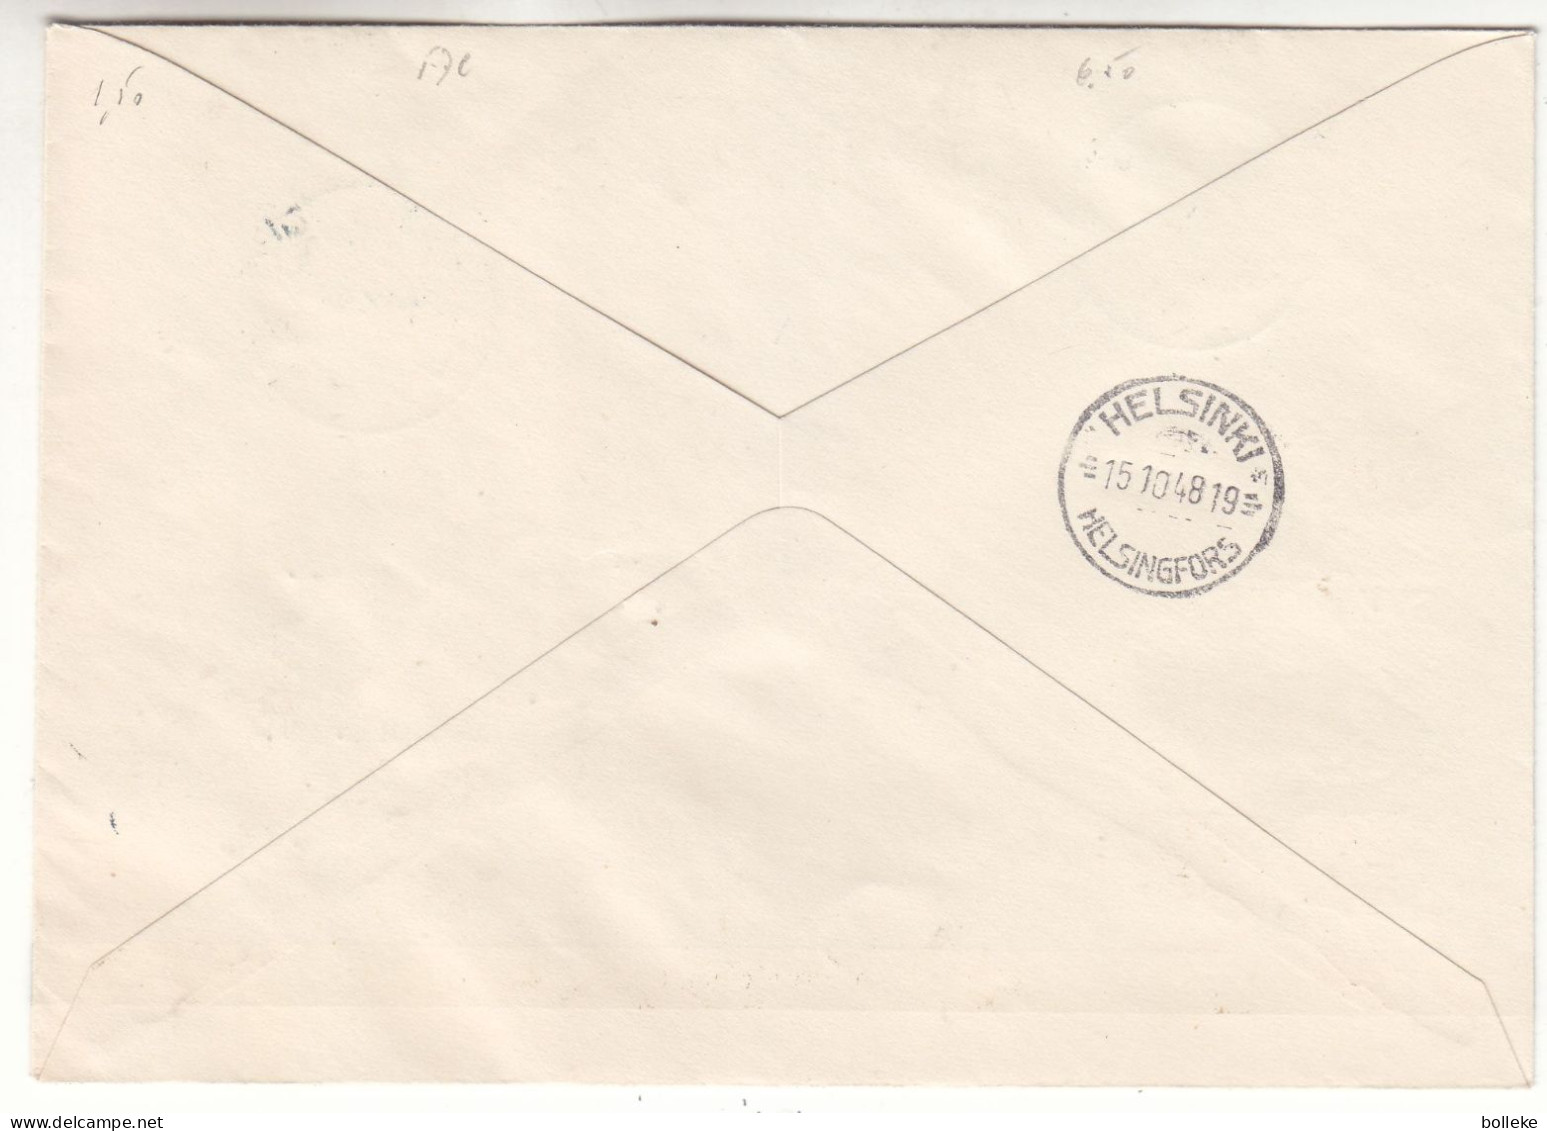 Finlande - Lettre FDC De 1948 - Oblit Helsinki -  Exp Vers Helsinki - Valeur 6,50 Euros - Briefe U. Dokumente